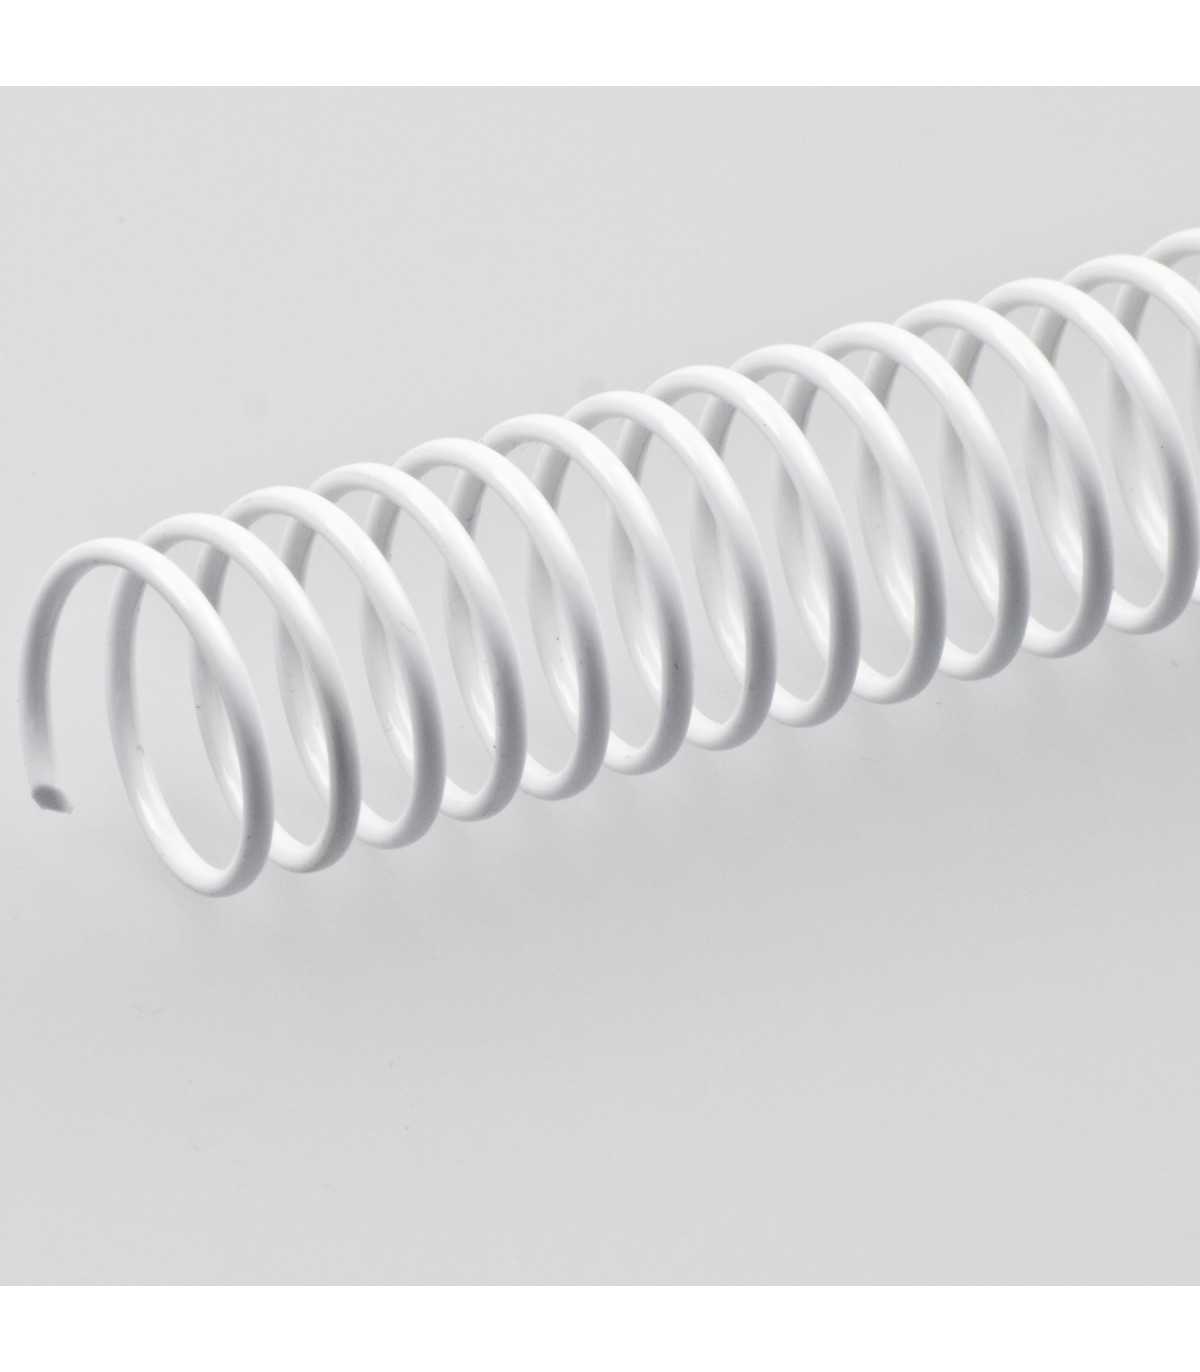 Spirali Coil per rilegature passo 4:1 colore bianco - Immagine Srl